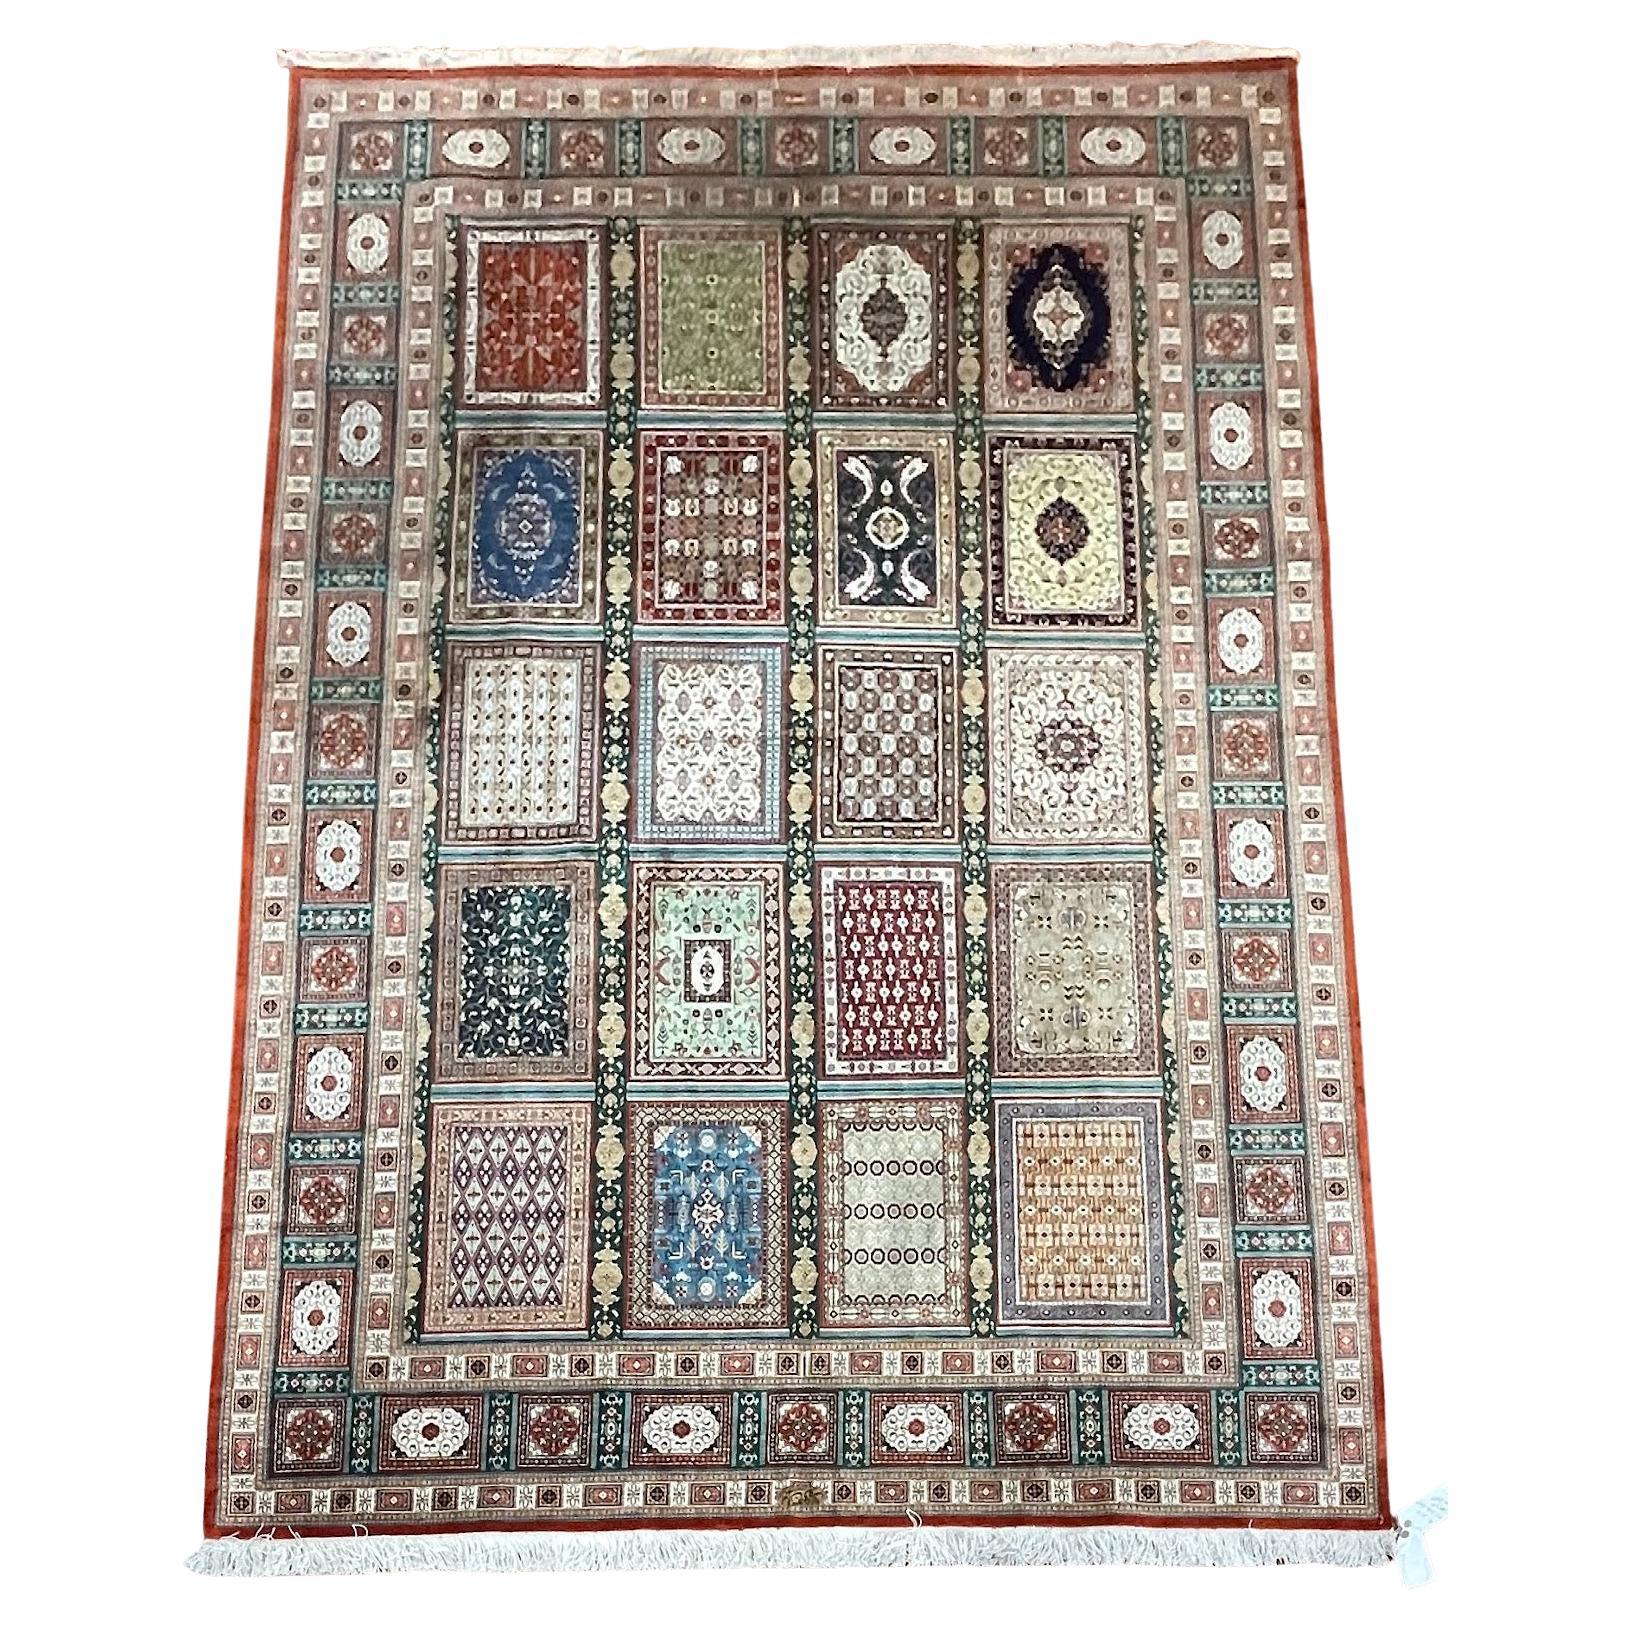 Äußerst feiner persischer Qum-Teppich aus Seide